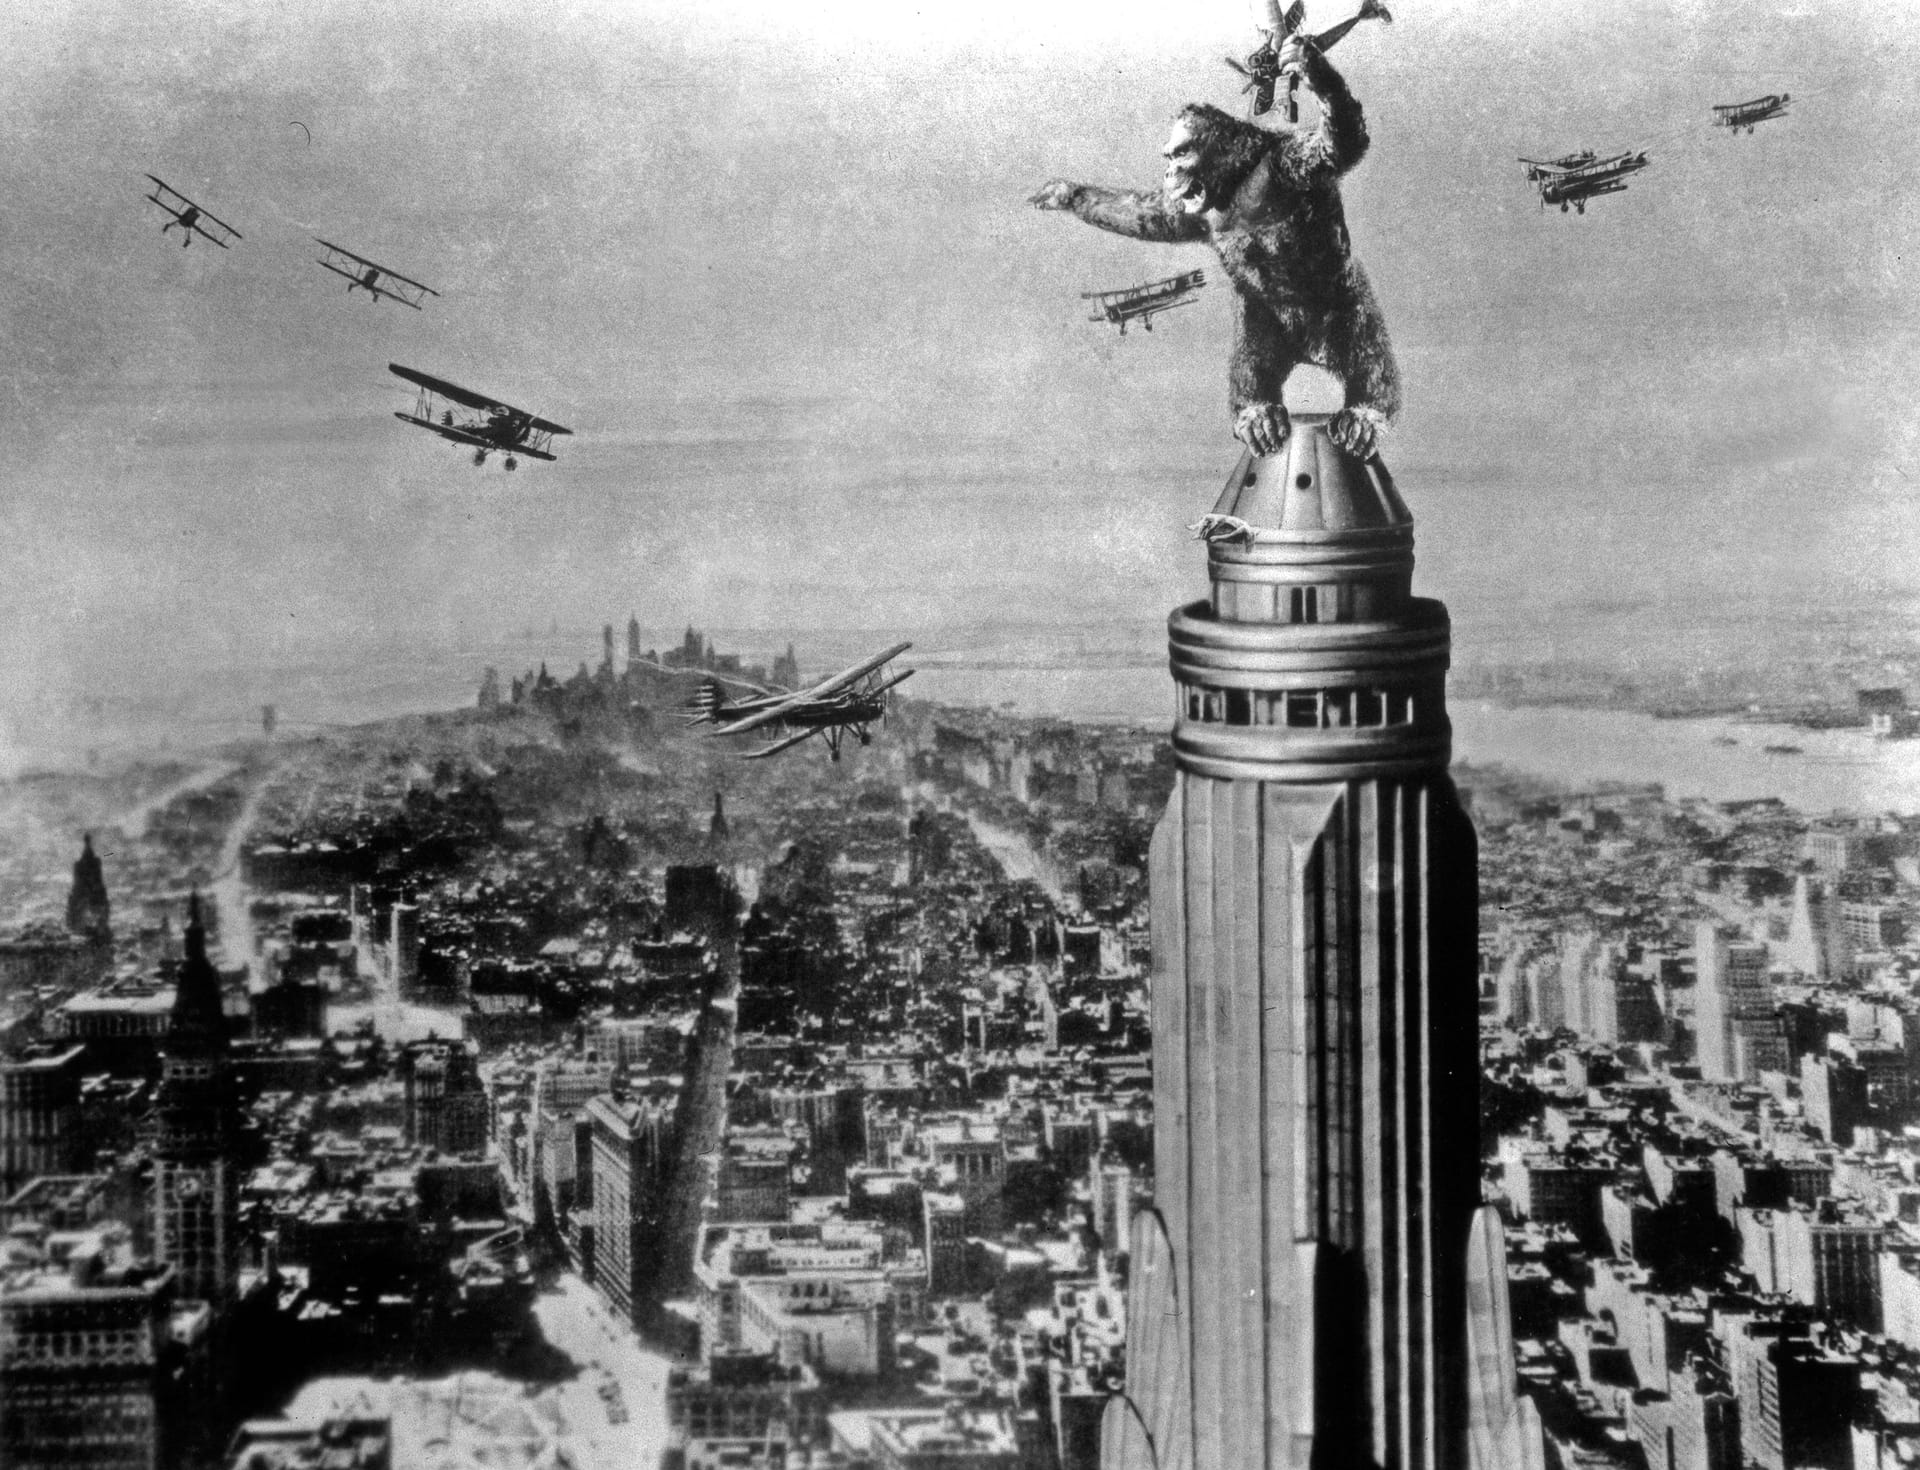 Berühmtes Gebäude: King Kong wird auf dem Dach des Empire State Building von Flugzeugen angegriffen.